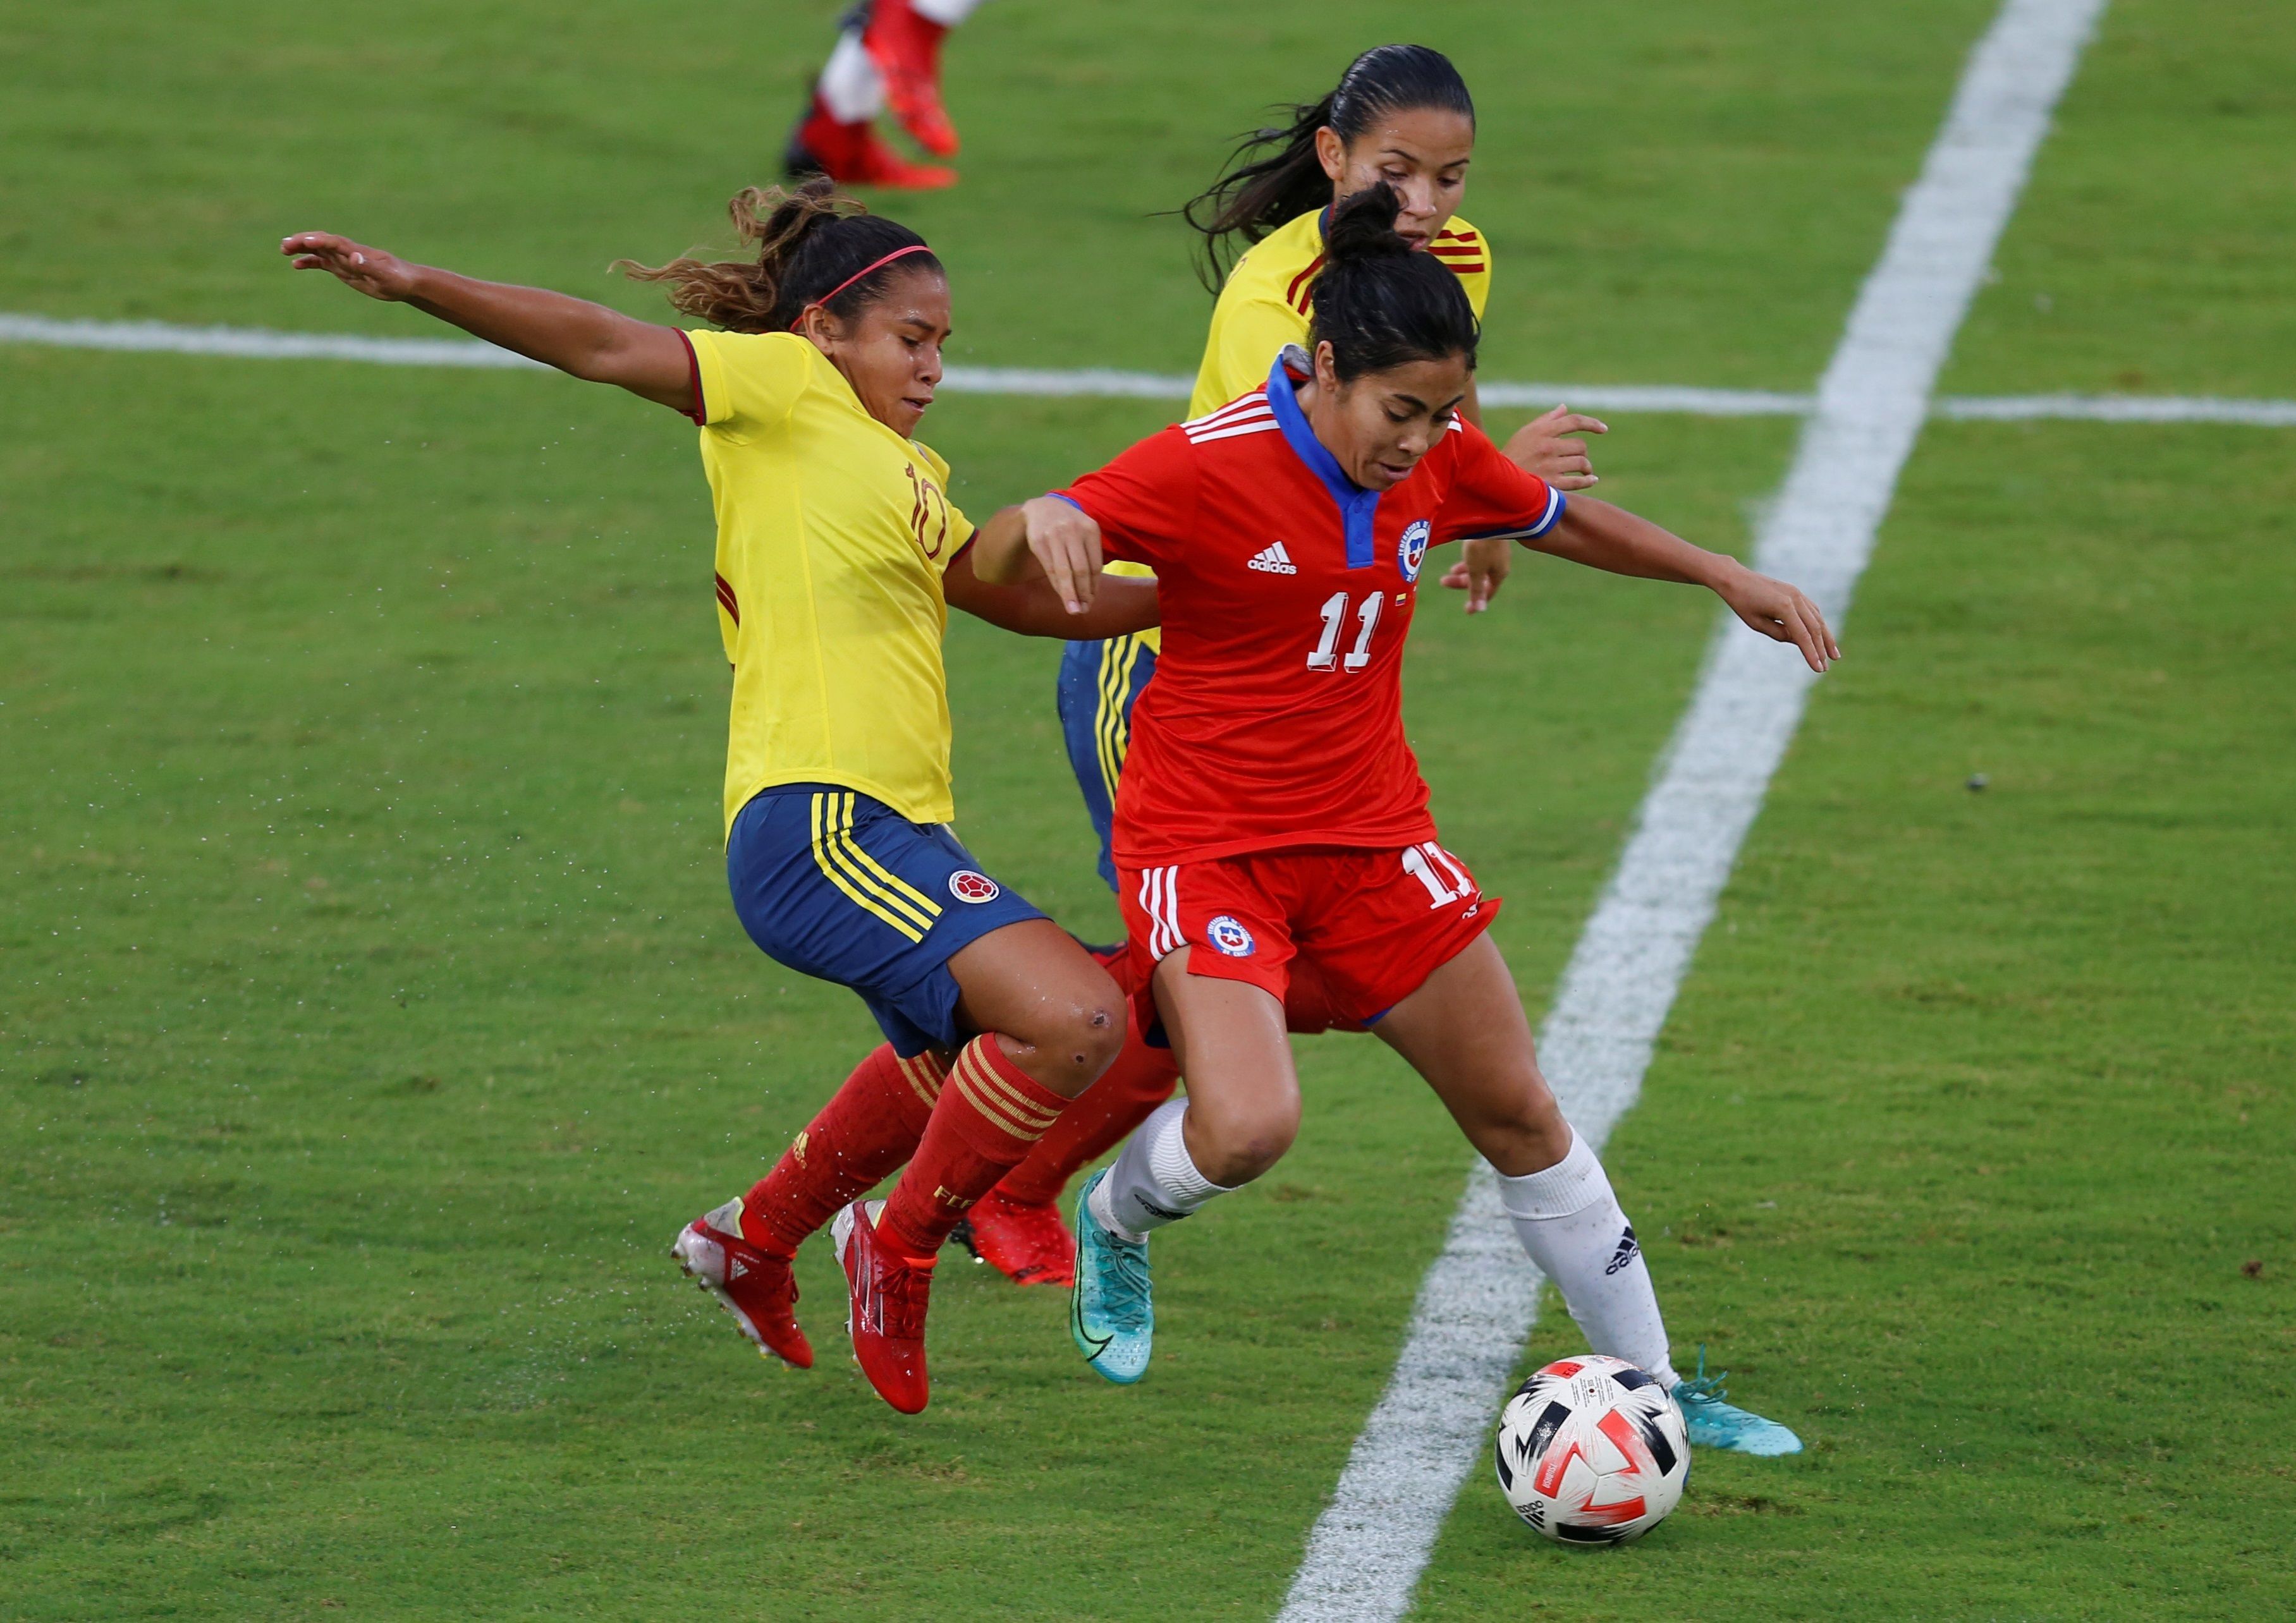 Leicy Santos (i) de Colombia disputa el balón con Yessenia López de Chile durante un partido amistoso entre ambas selecciones nacionales femeninas, hoy, en Cali (Colombia). EFE/ Ernesto Guzmán Jr. 